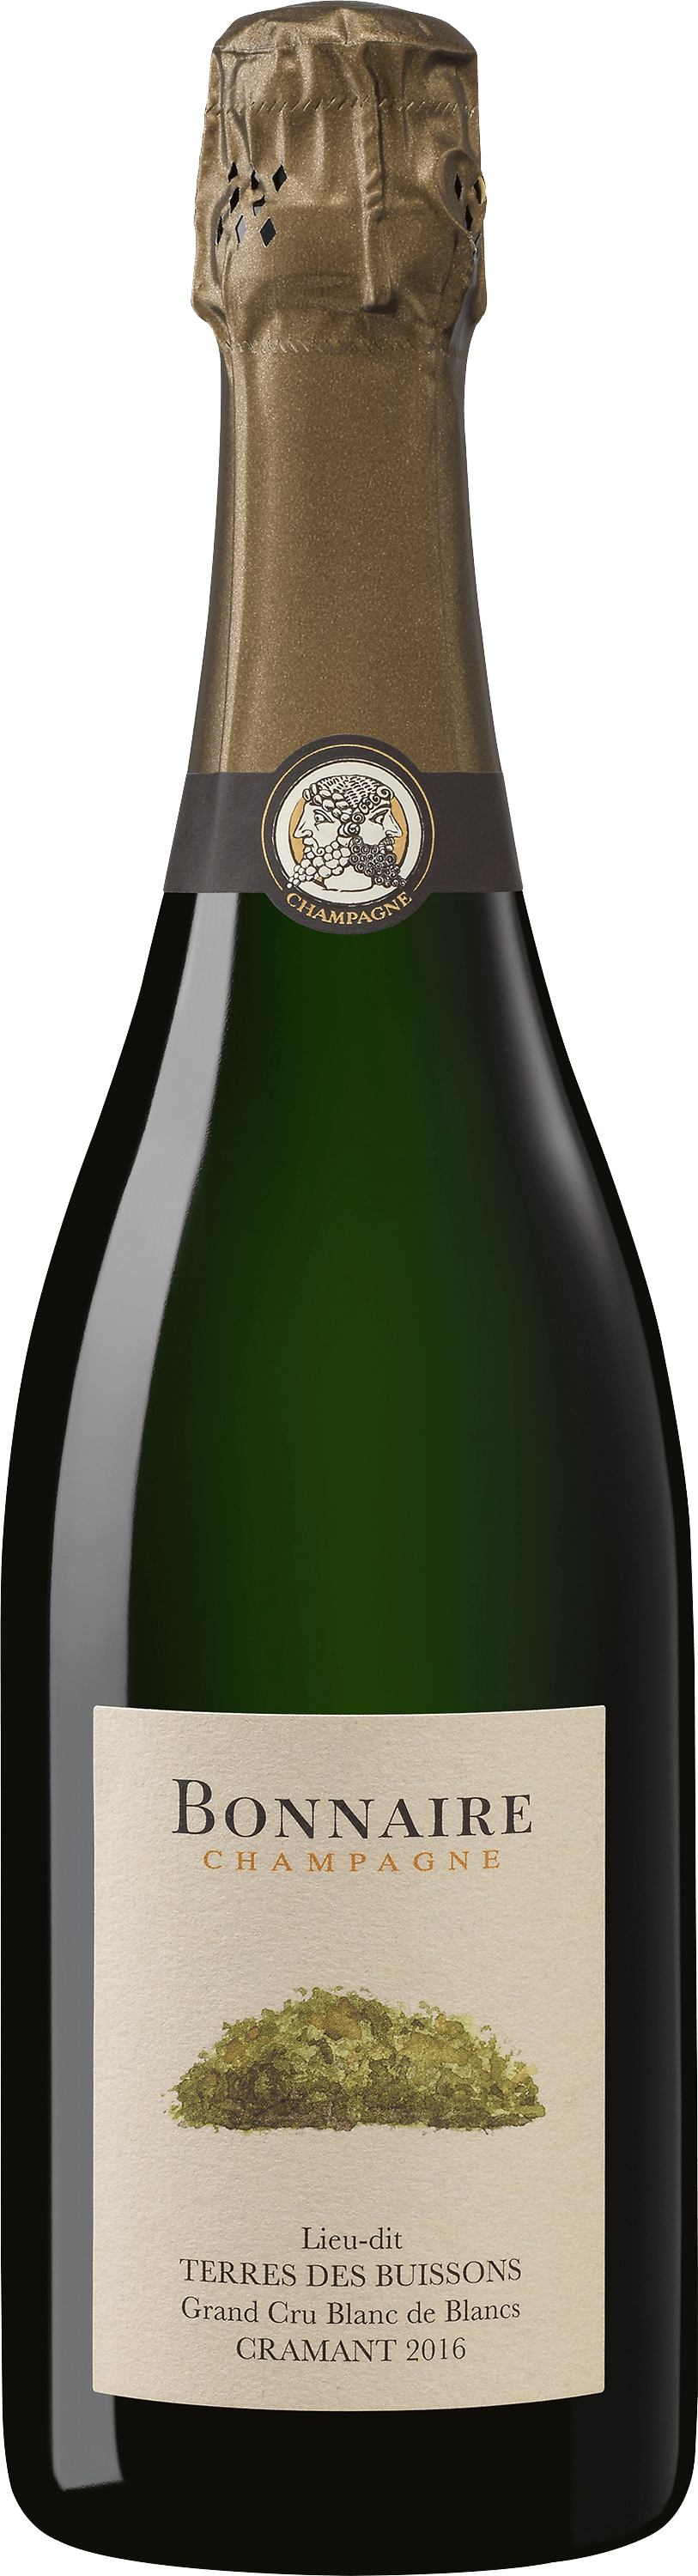 2016 Bonnaire Champagner »Terres des Buissons«